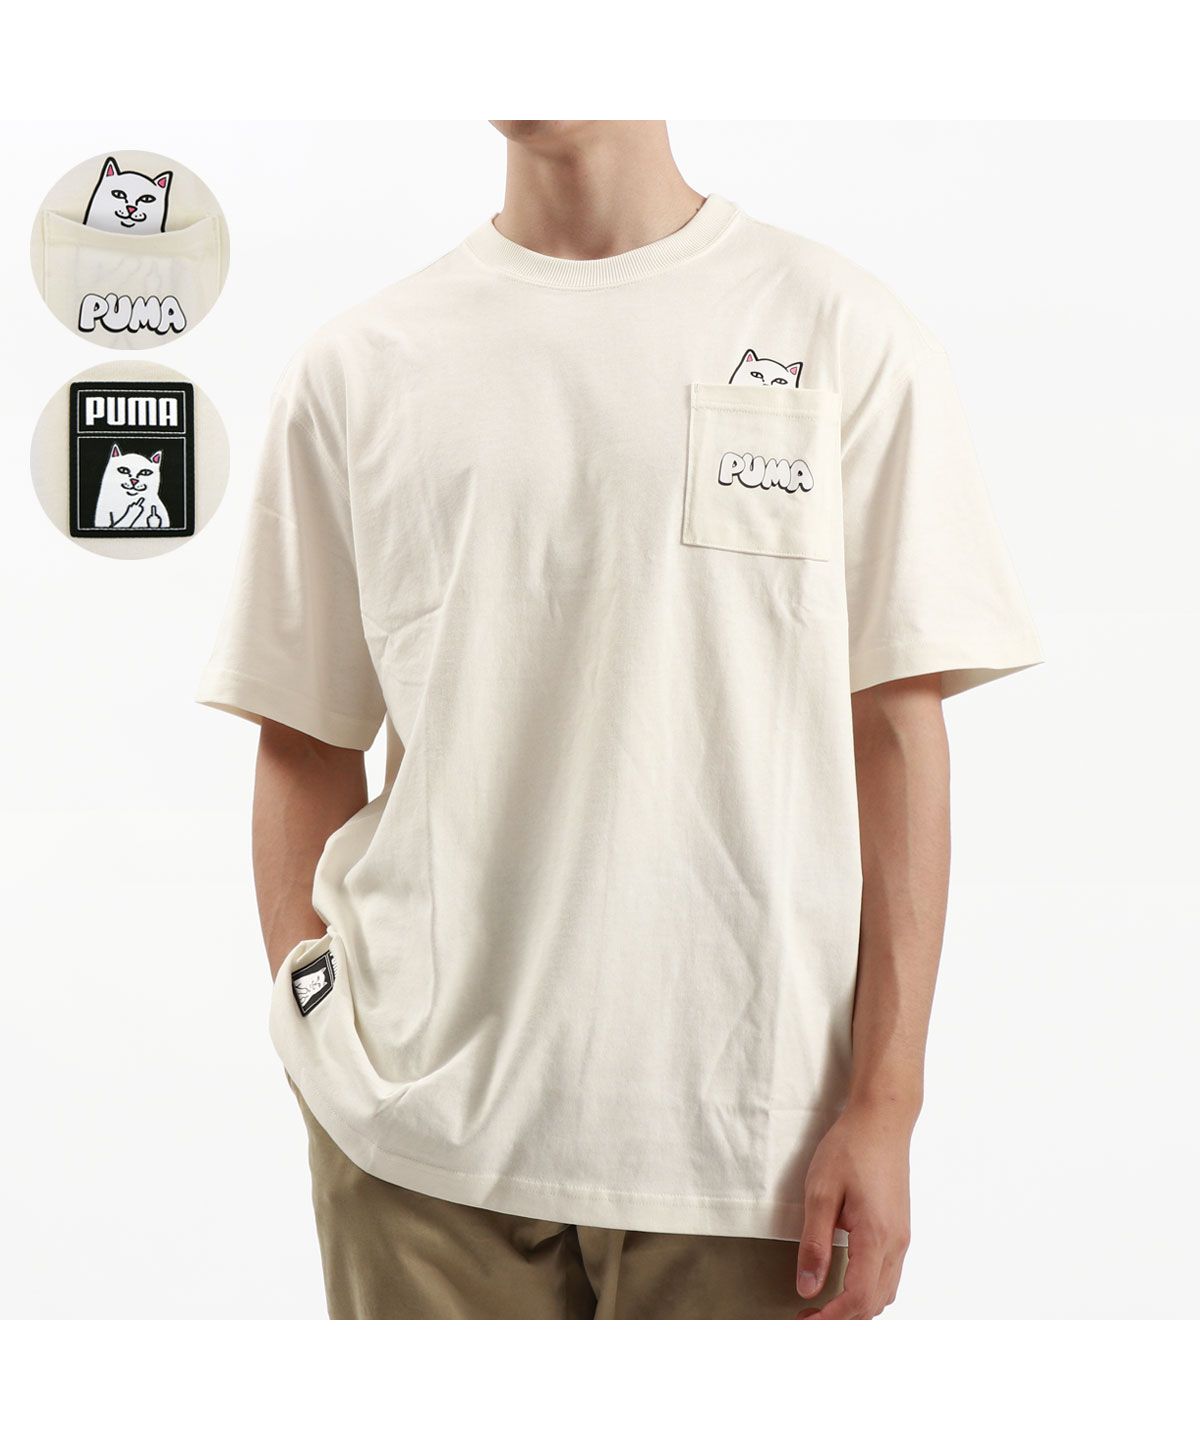 プーマ Tシャツ 半袖 PUMA ブランド 大きめ 大人 黒 白 綿 オーバー